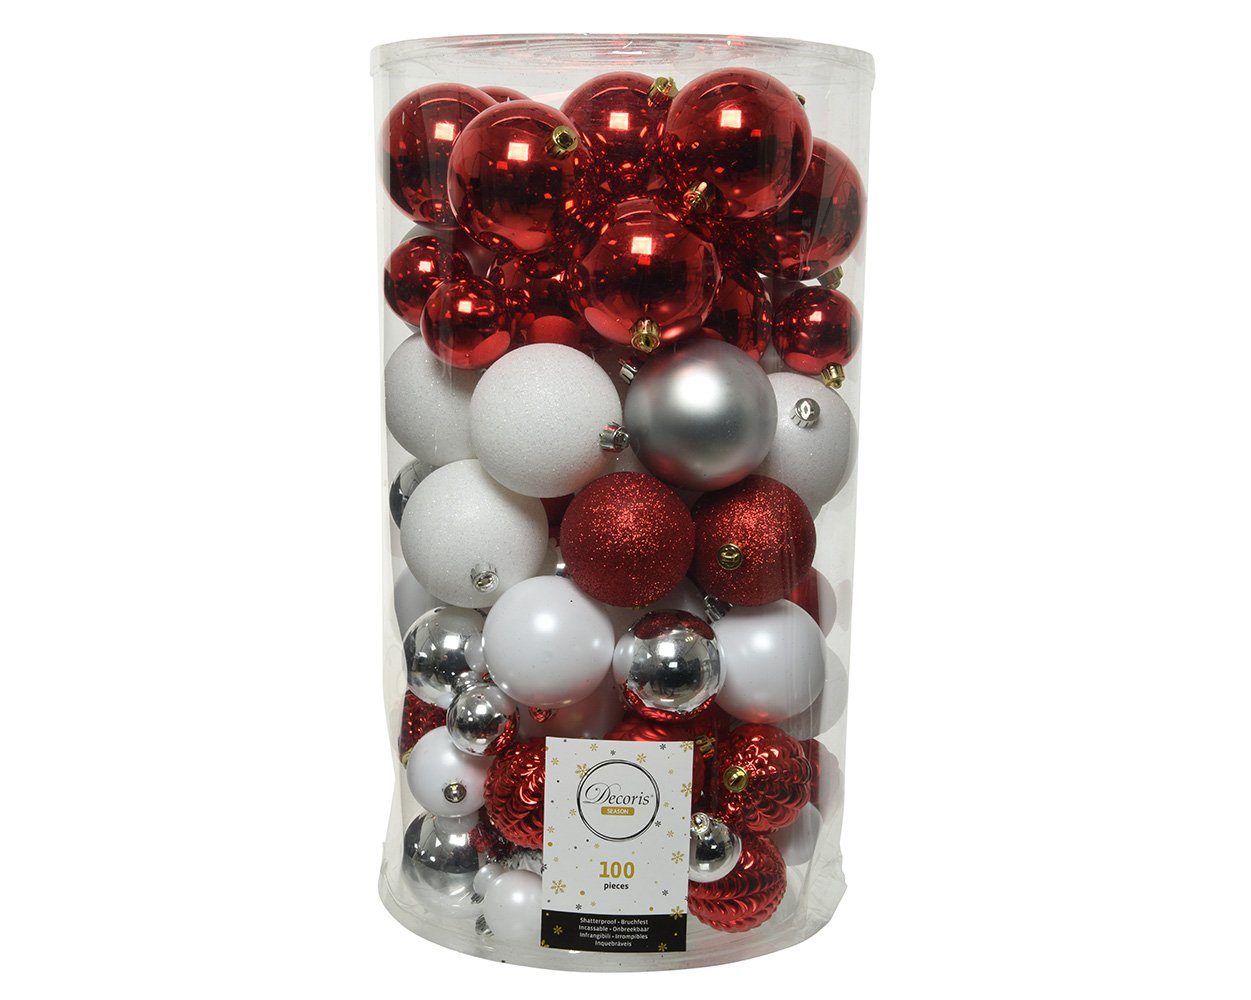 Decoris season decorations Weihnachtsbaumkugel, Weihnachtskugeln Kunststoff Mix 4-8cm rot / weiß / silber, 100er Set